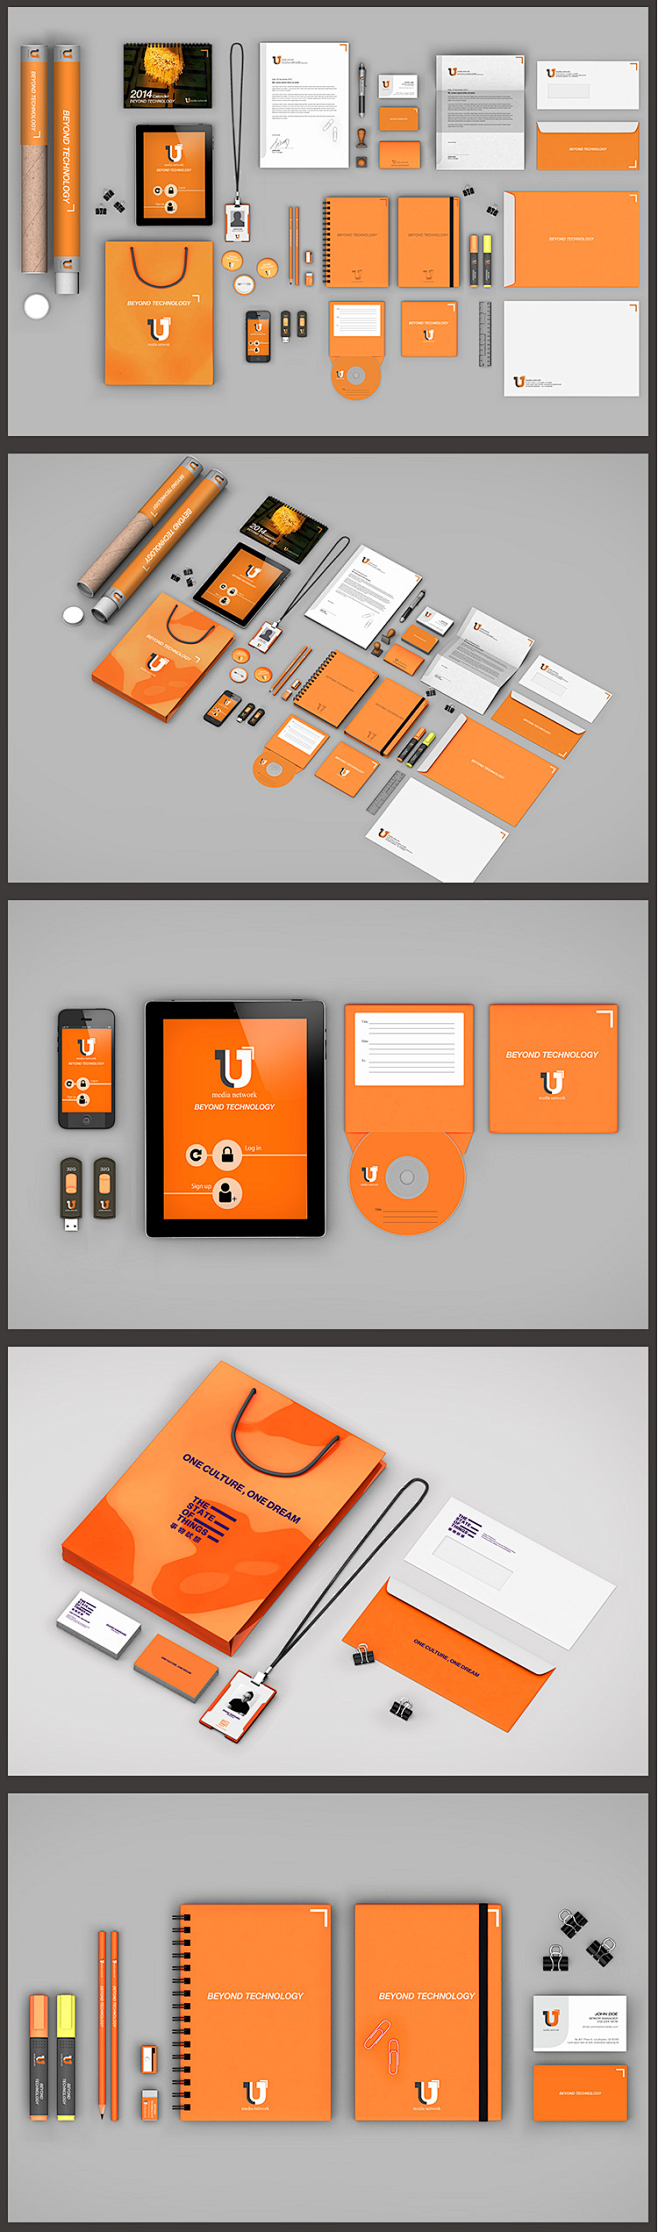 高精像素橙色VI设计模板素材PSD源文件...